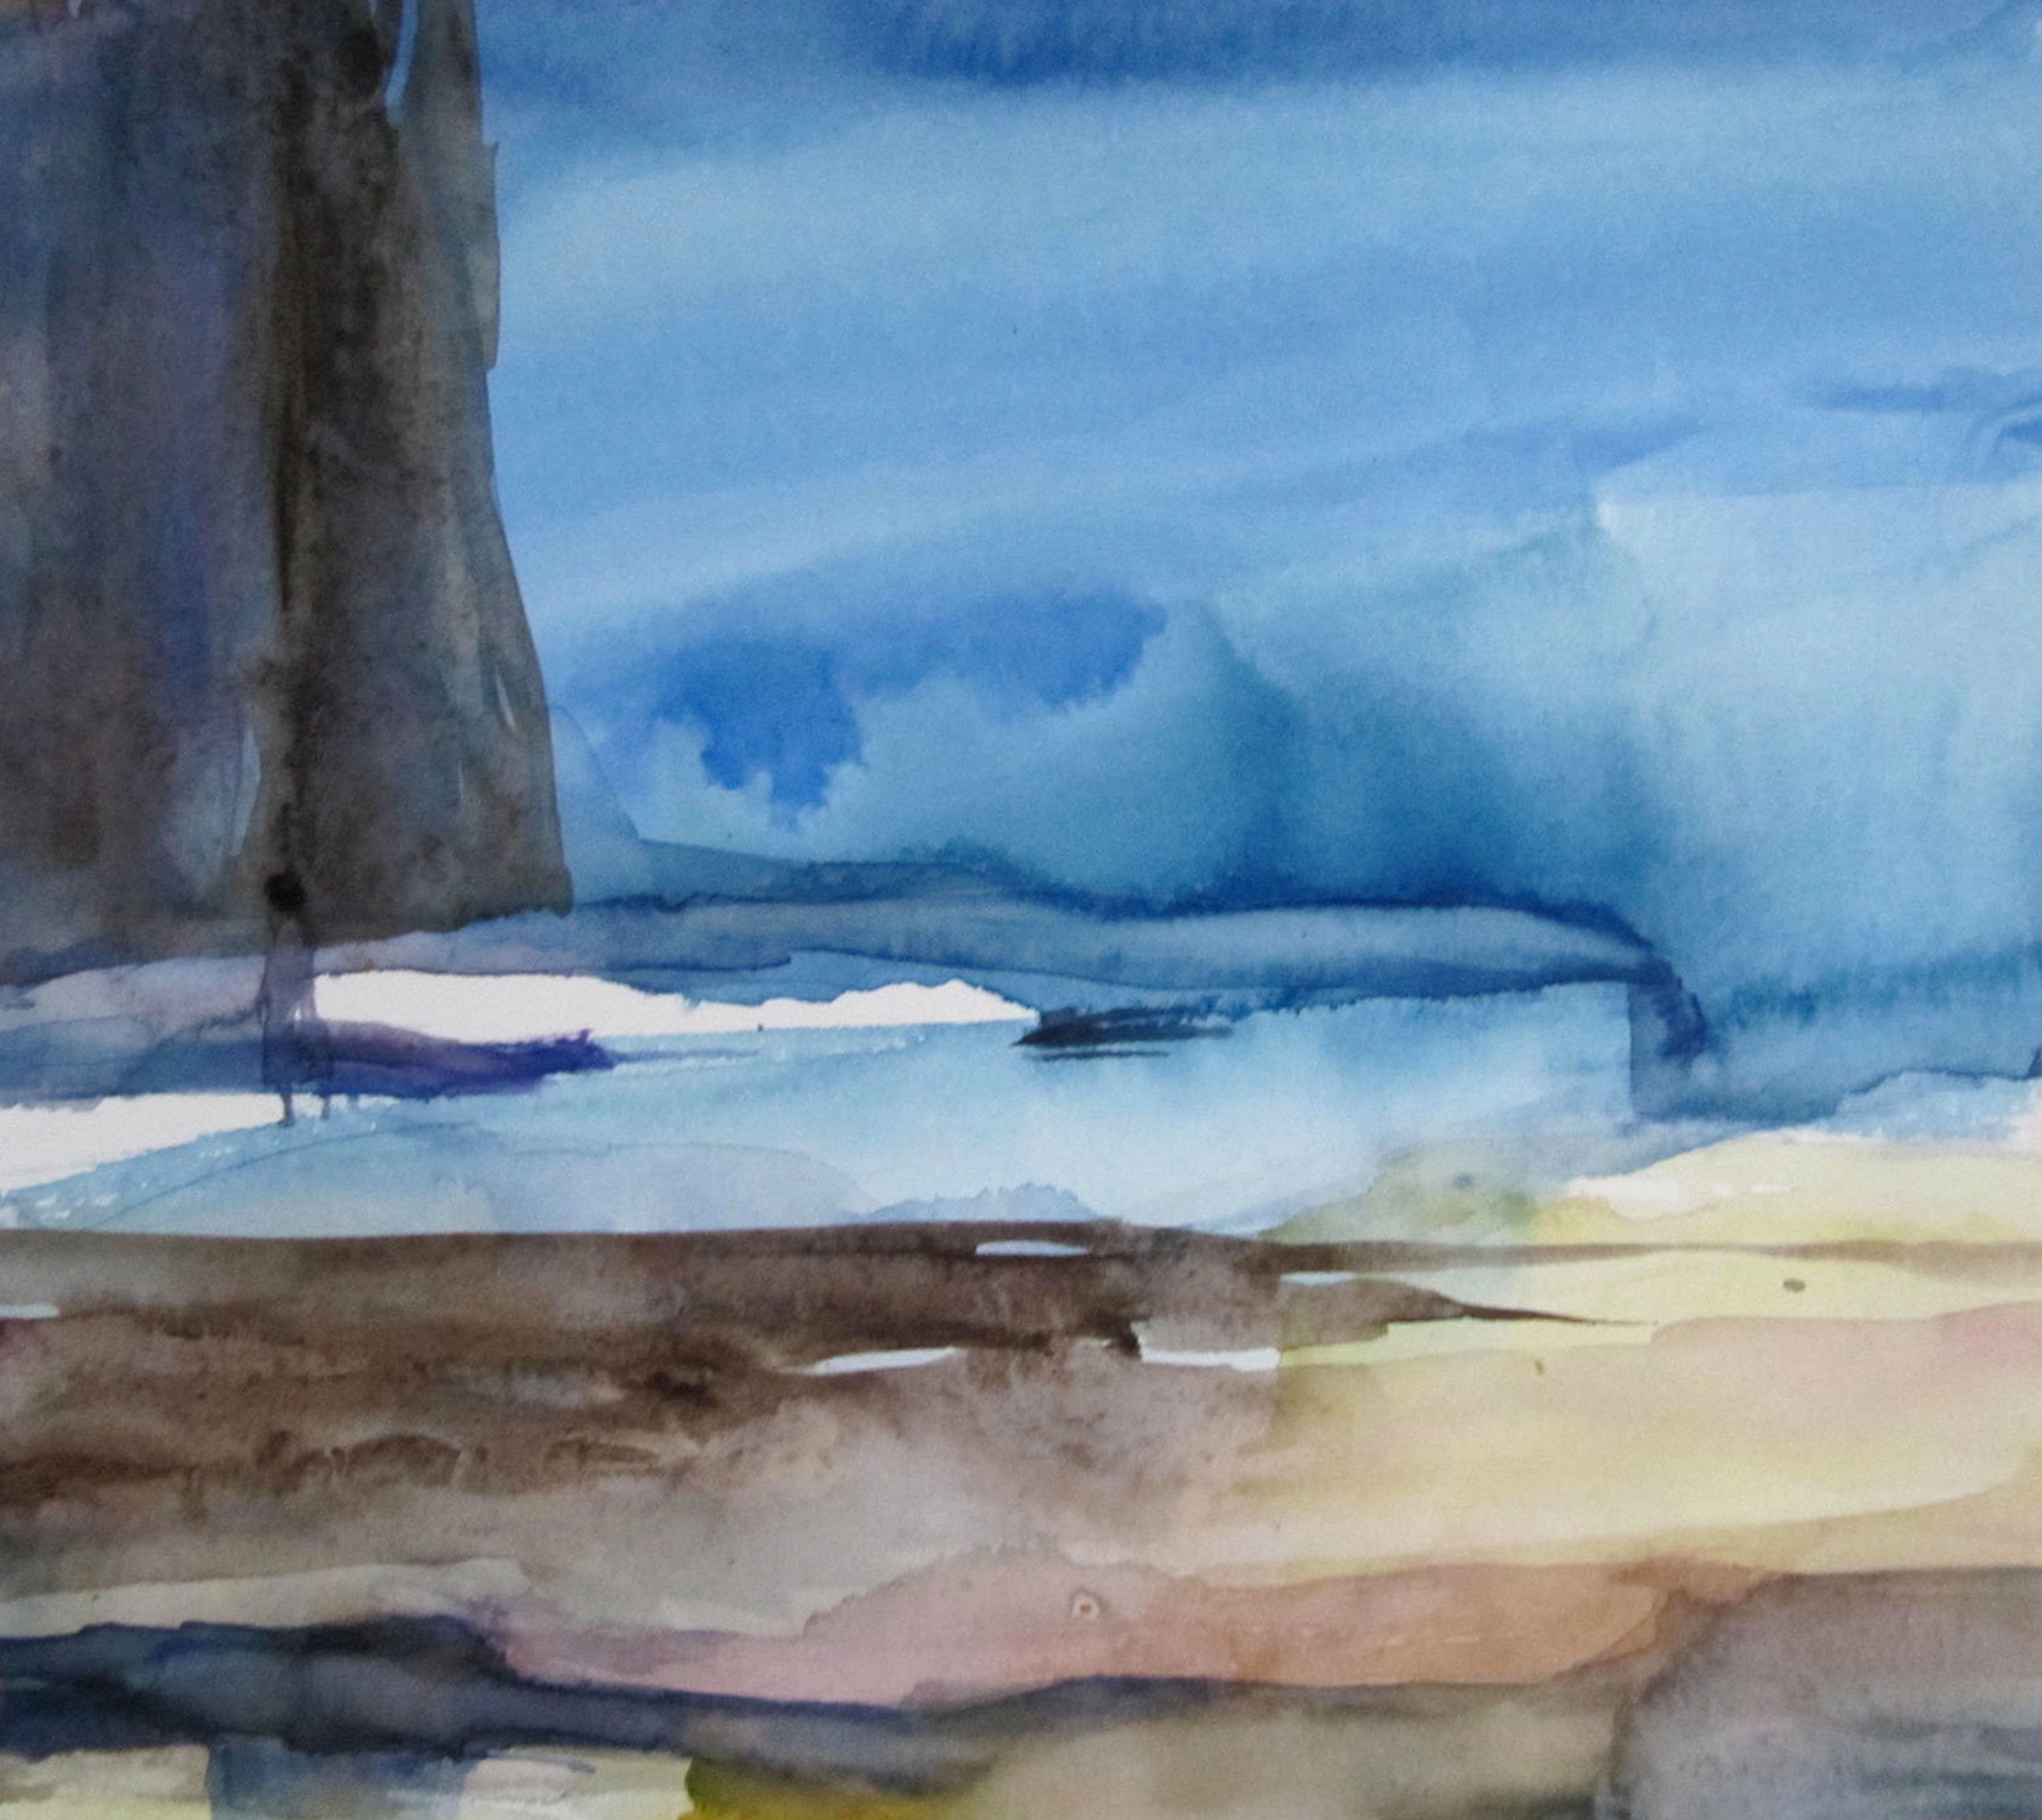 Sylvia Baldeva's "Utopie" zeigt ein Aquarell gemaltes Landschaftsgemälde, Landschaft, Utopie, Unwirklichkeit, Traum, Symbolik, Abstraktion,  Aquarell auf Canson®-Papier. Farbe Blau, Sand, Braun.